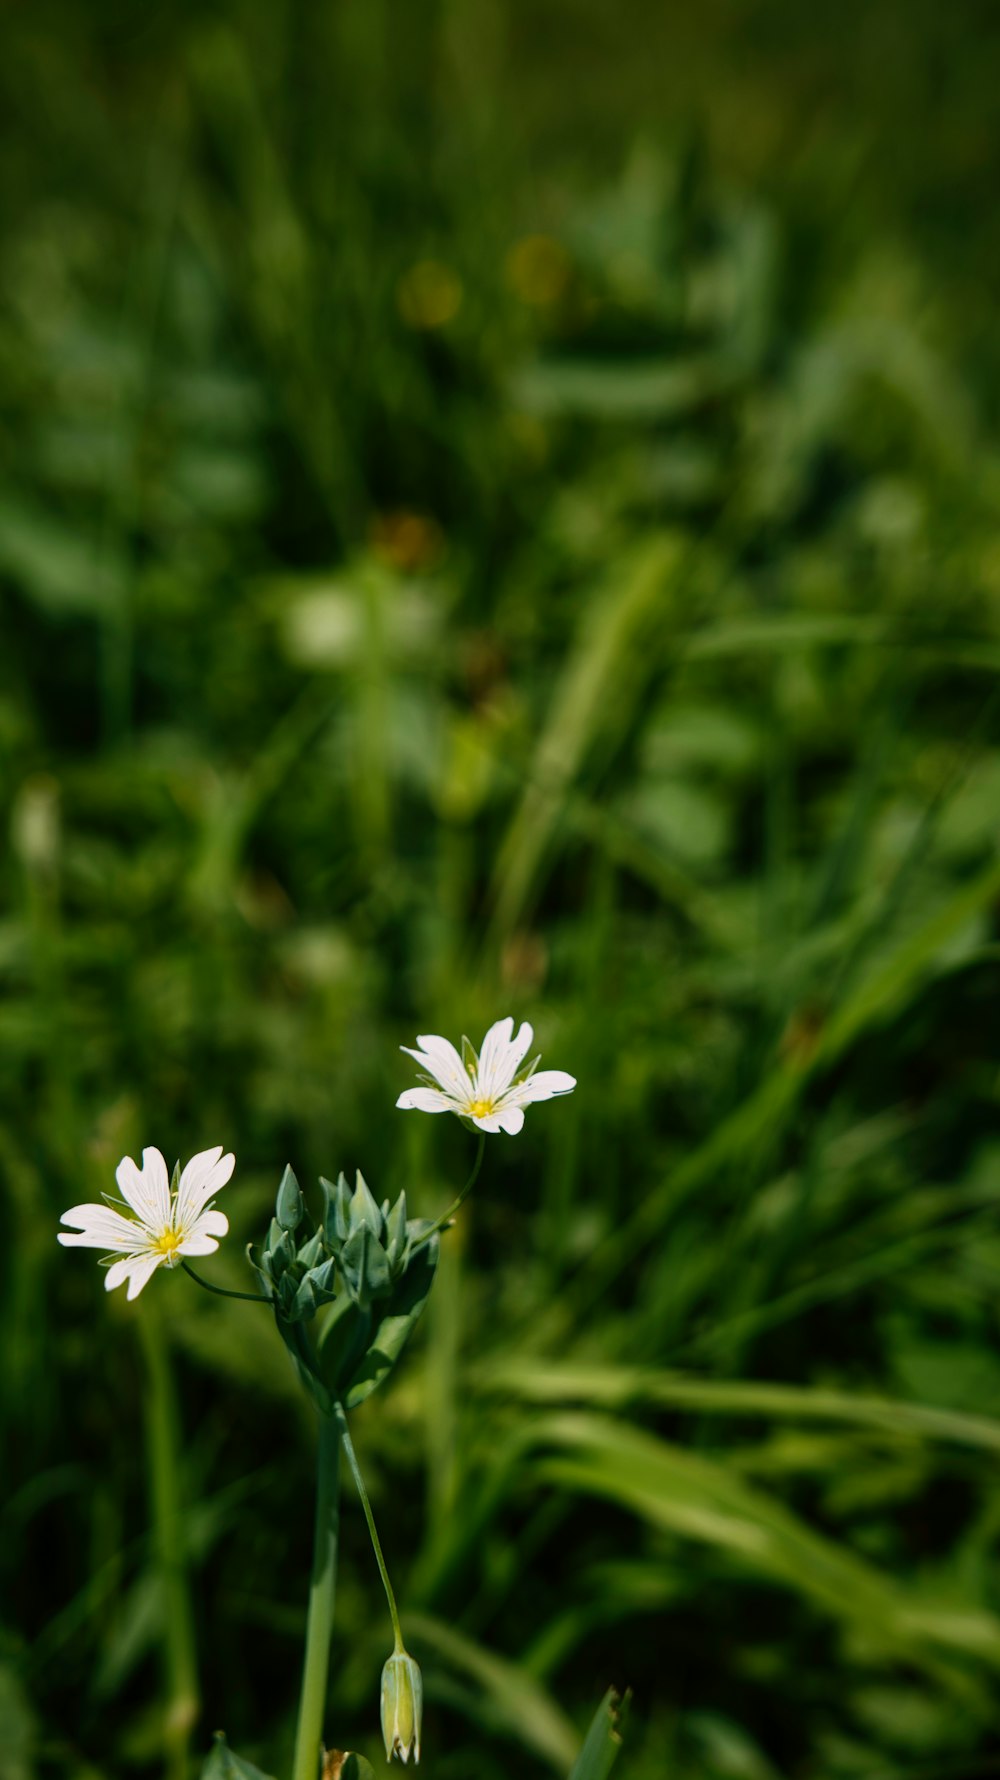 무성한 녹색 들판 위에 앉아 있는 두 개의 하얀 꽃